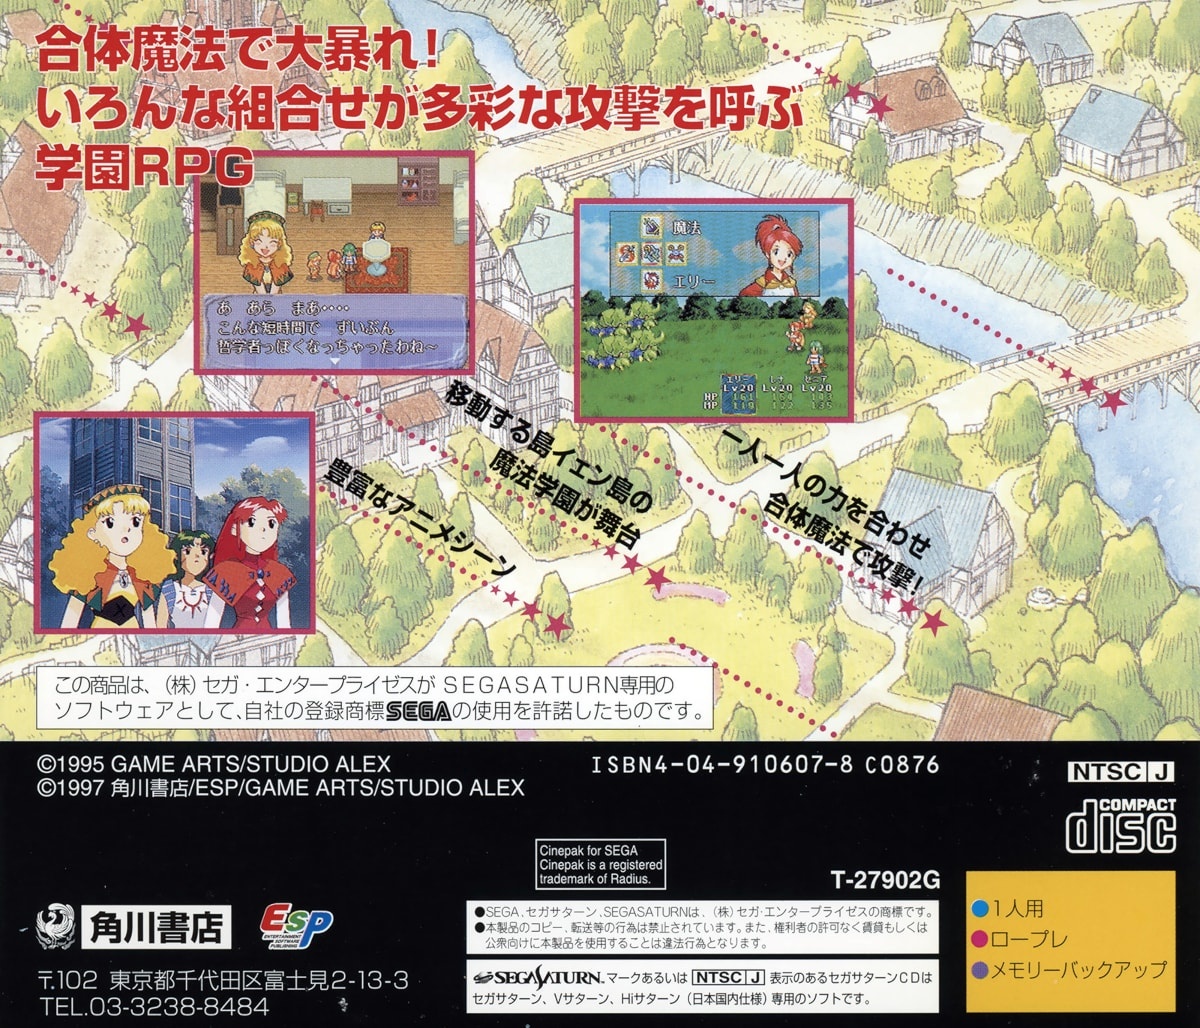 Capa do jogo Mahou Gakuen Lunar!